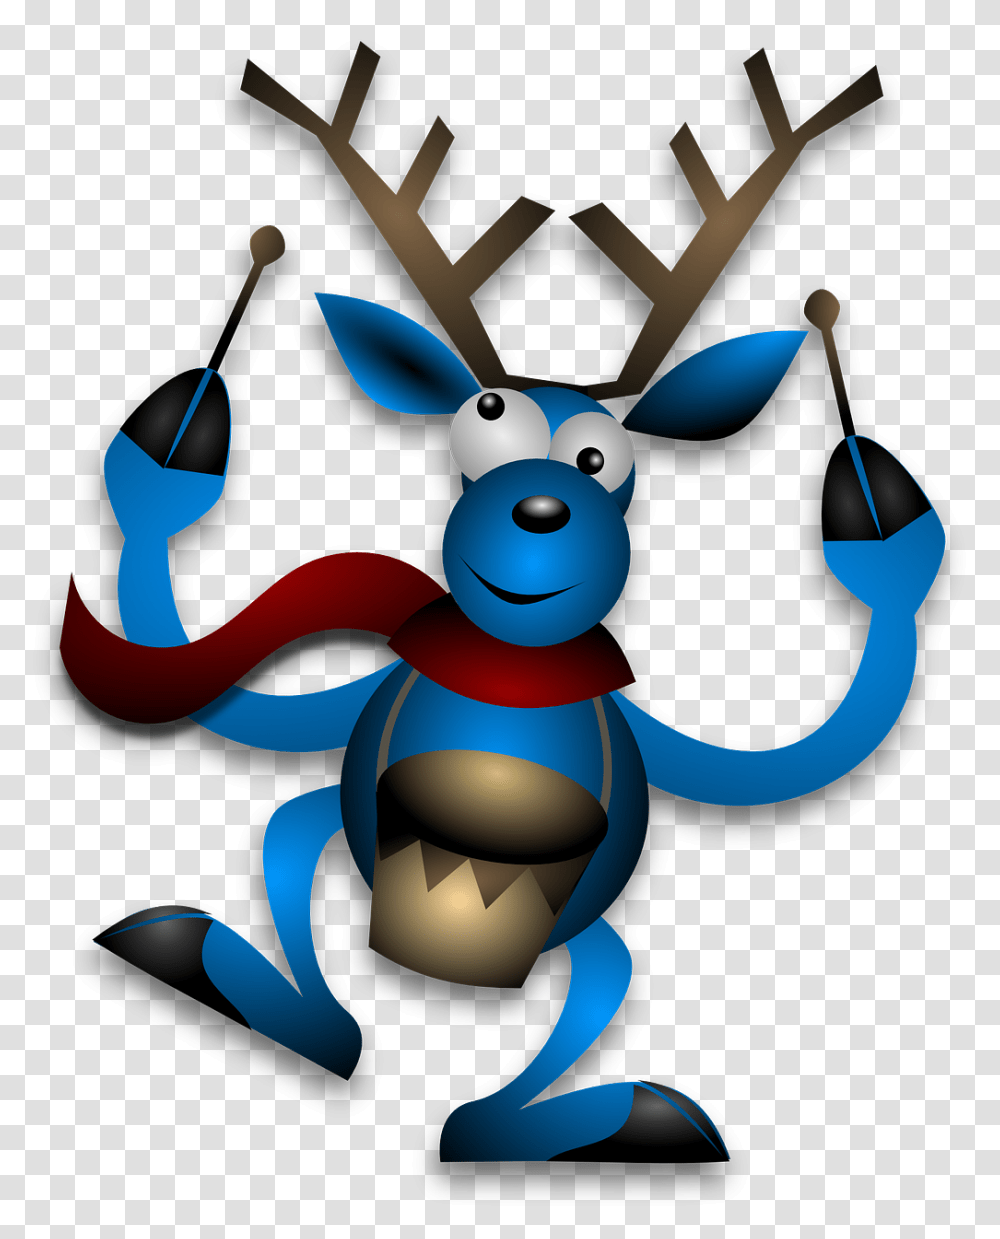 Reindeer Drummer Drumming Blue Christmas Noel Christmas Deer With Drum, Toy, Wildlife, Animal, Mammal Transparent Png